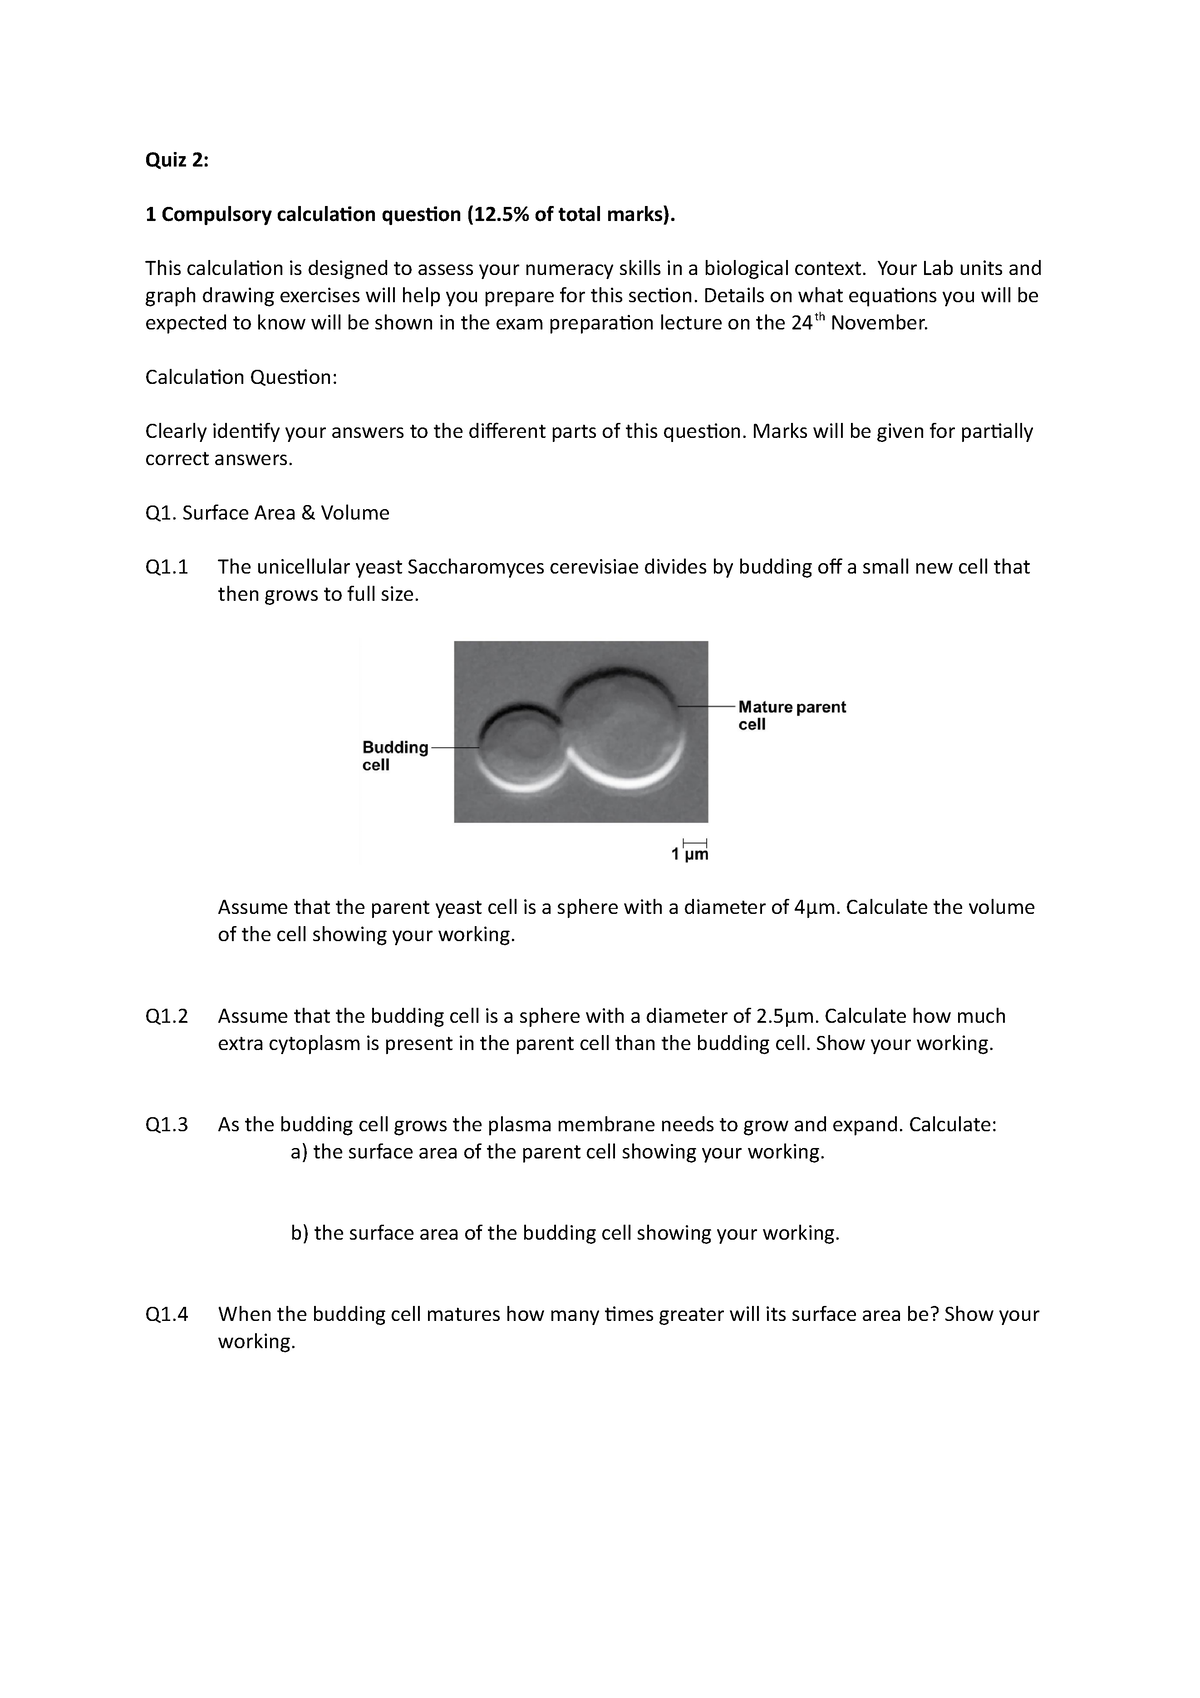 Quiz 2 Mock Exam - Calculation and SAQ - Quiz 2: 1 Compulsory ...